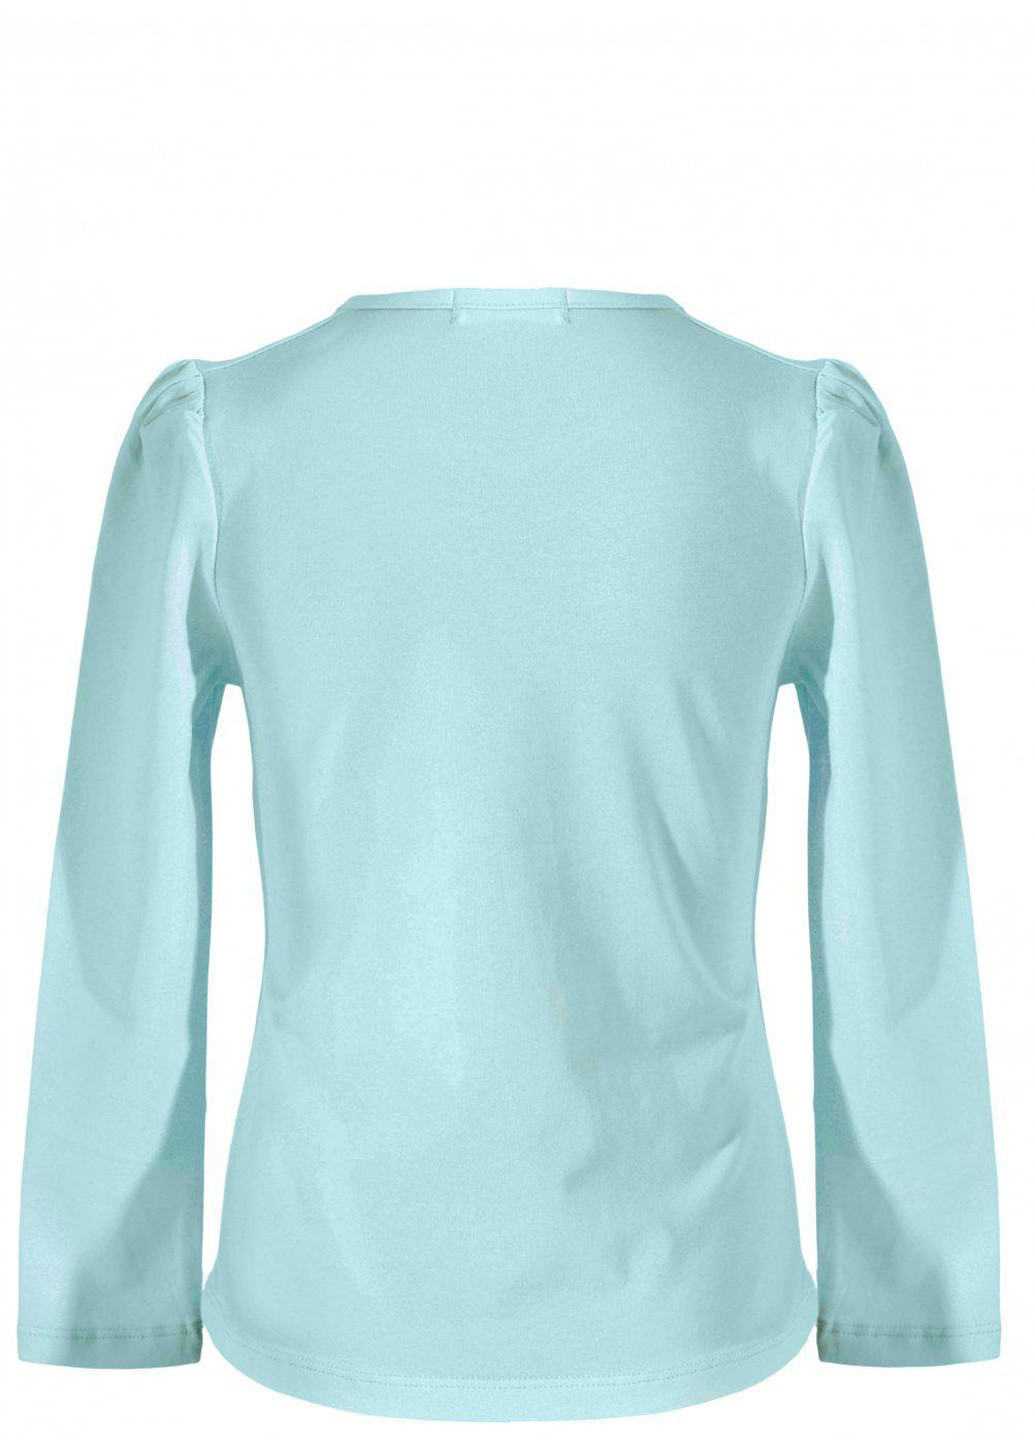 Синяя футболки батник дівчинка (w019-132) Lemanta